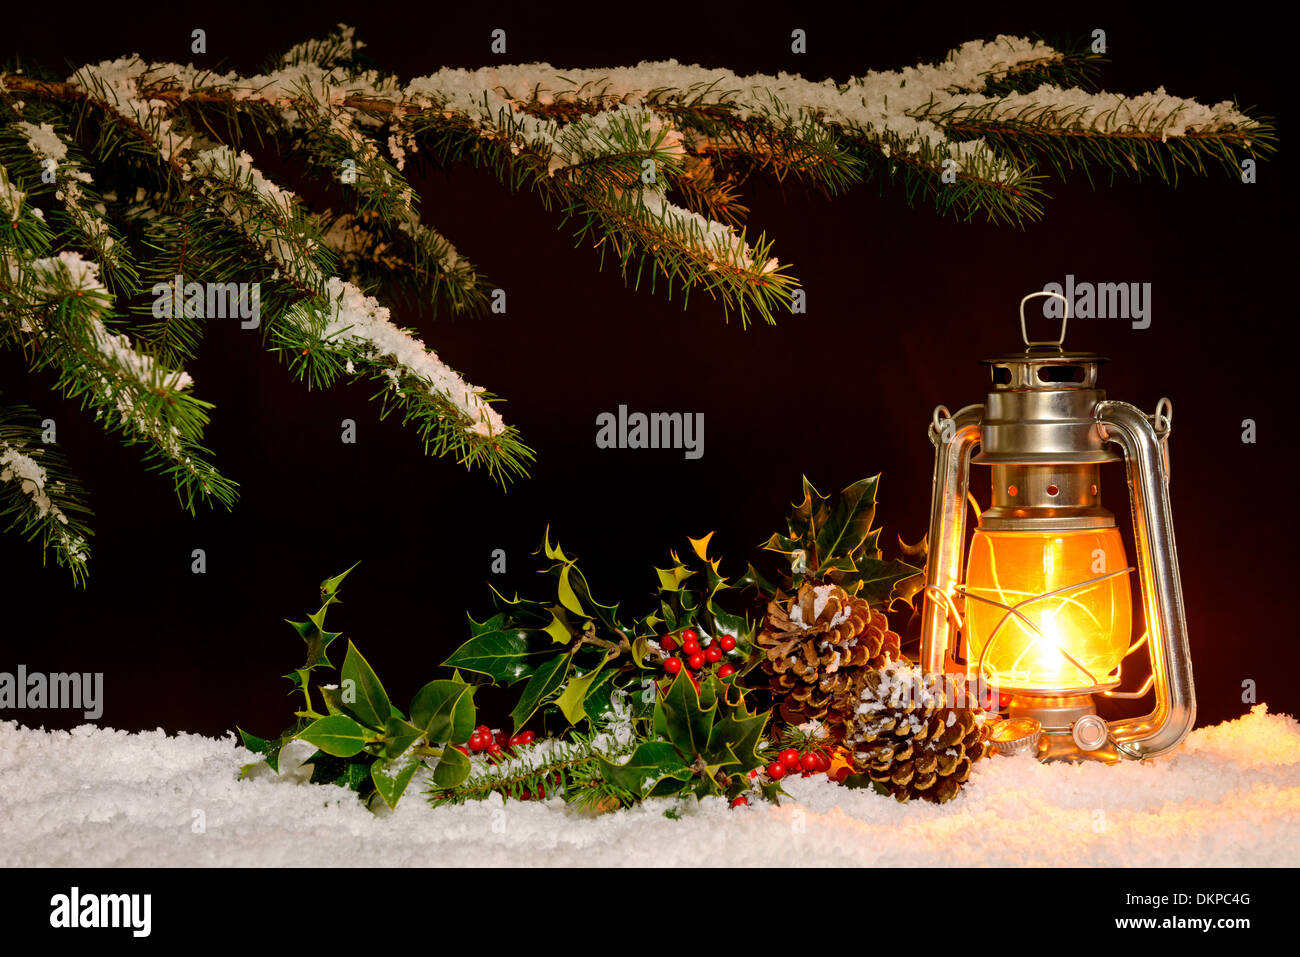 Scena di natale - un olio riempito di masterizzazione lanterna luminosa con coperta di neve albero, agrifoglio ed edera illuminato dalla luce della lampada. Foto Stock